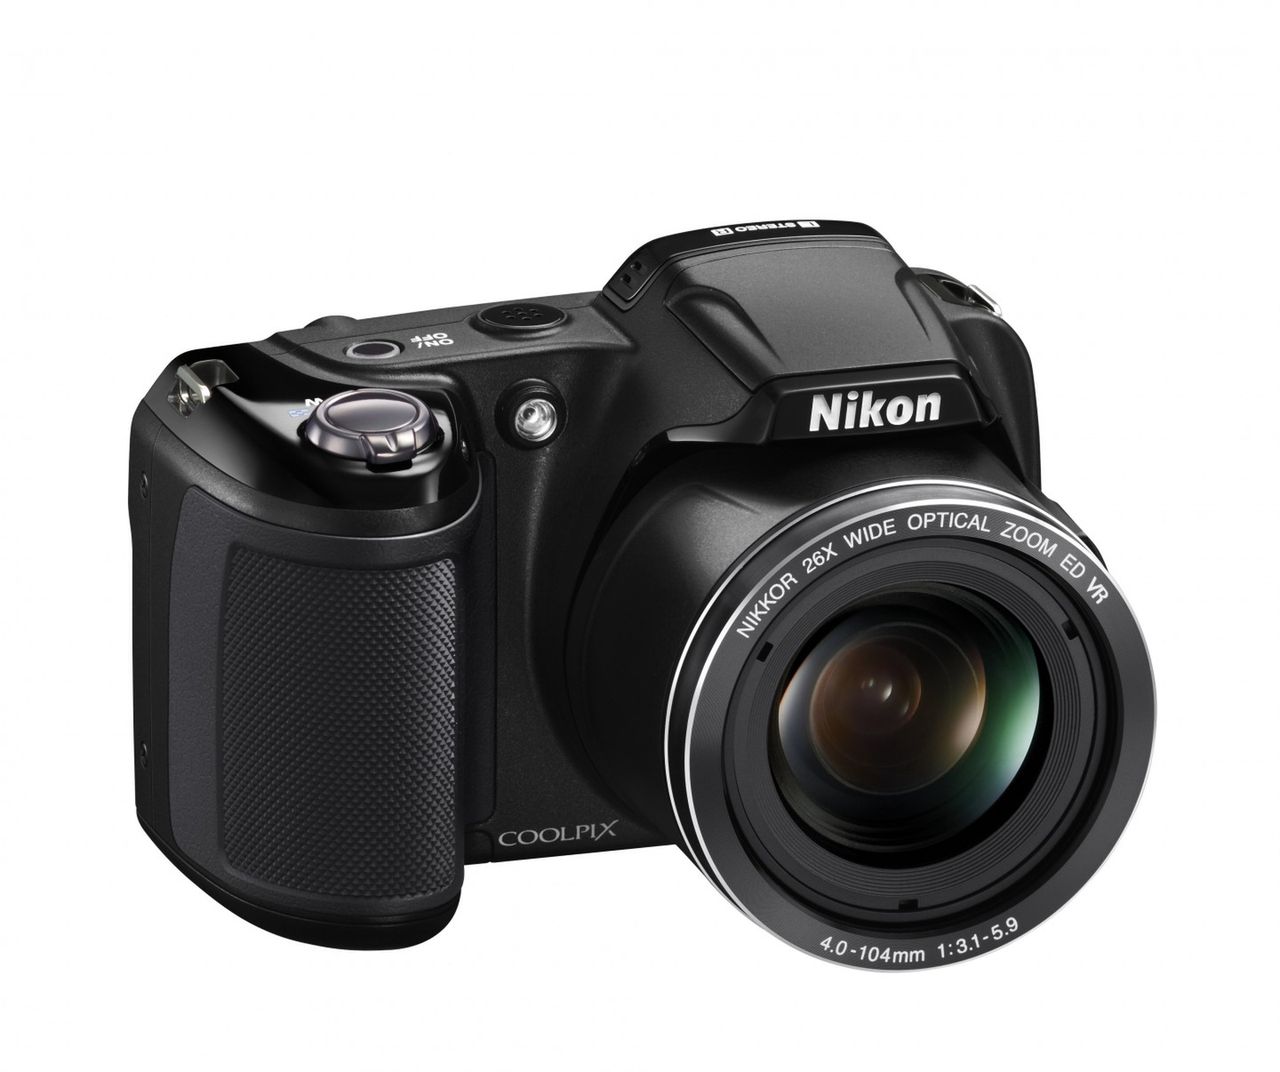 Nikon Coolpix L810 to aparat kompaktowy z 2012 roku, który sprawdza się jako aparat amatorski